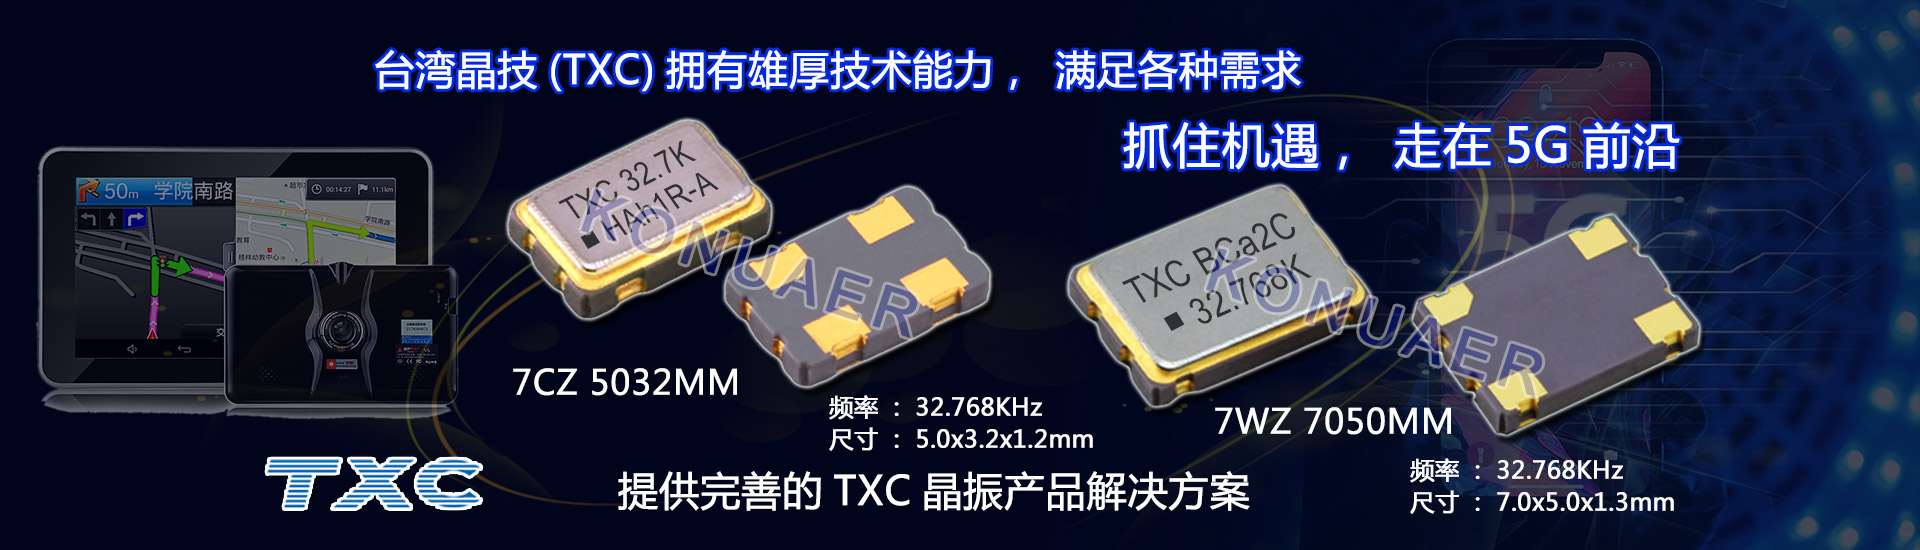 台湾晶技拥有雄厚的技术能力,走在科技的前端,满足高端市场对于高精密晶体振荡器的需求